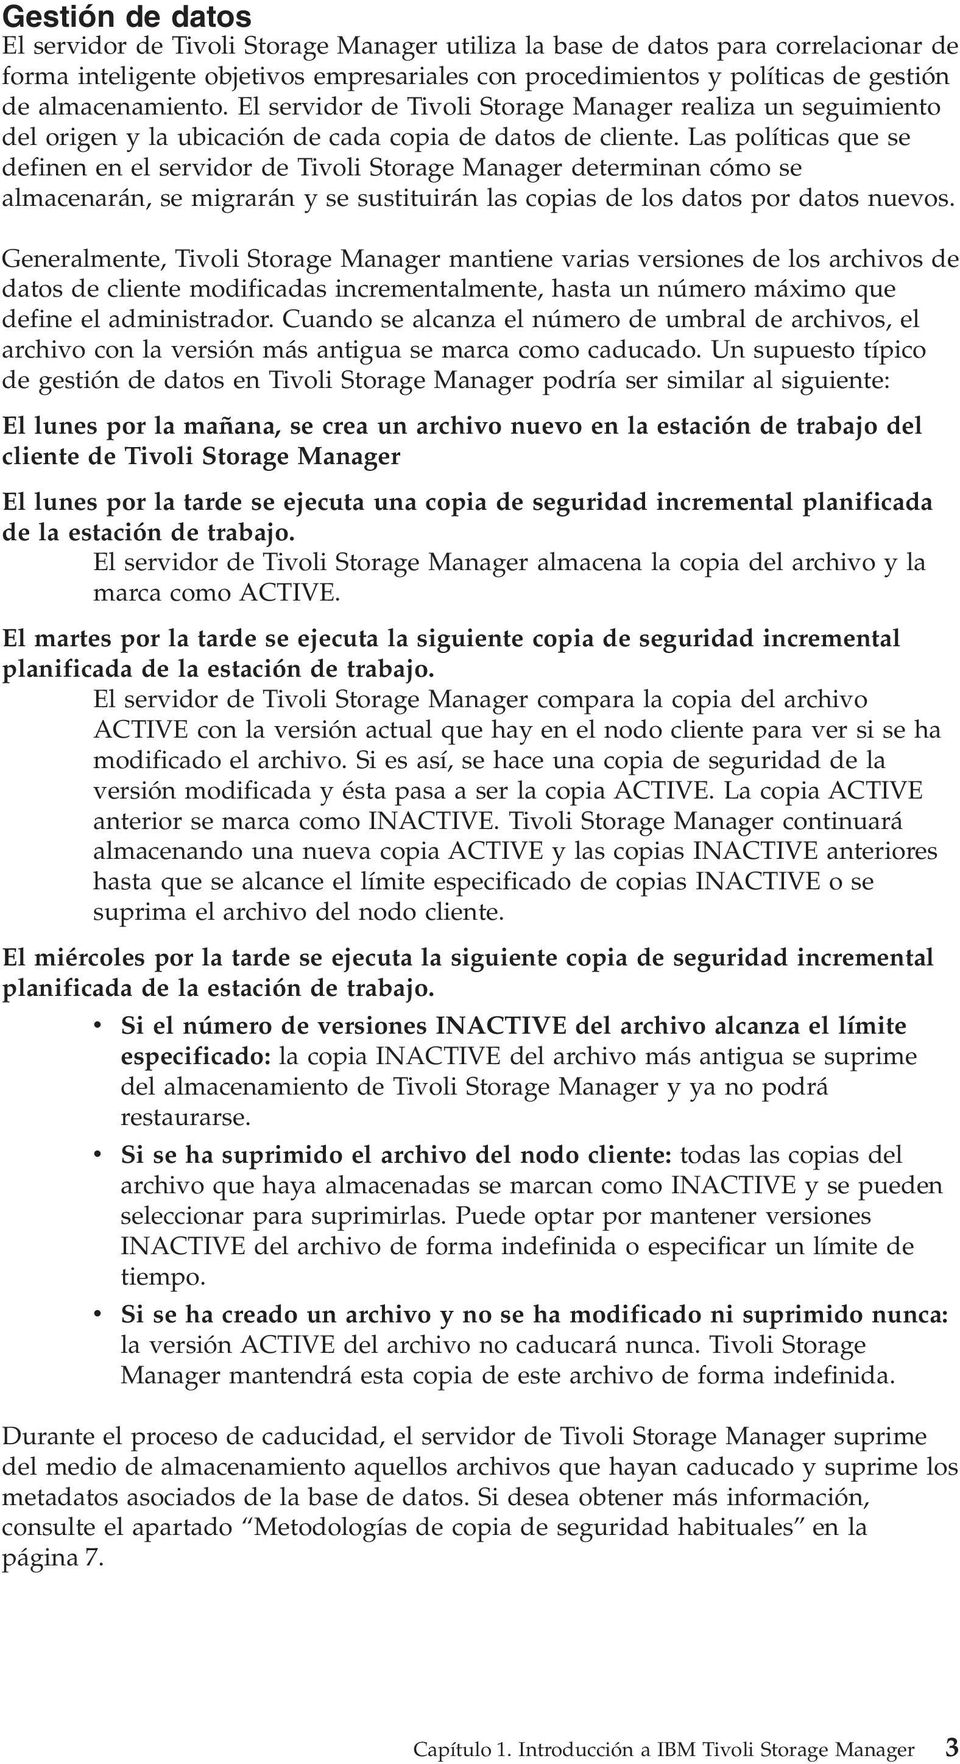 Las políticas que se definen en el seridor de Tioli Storage Manager determinan cómo se almacenarán, se migrarán y se sustituirán las copias de los datos por datos nueos.